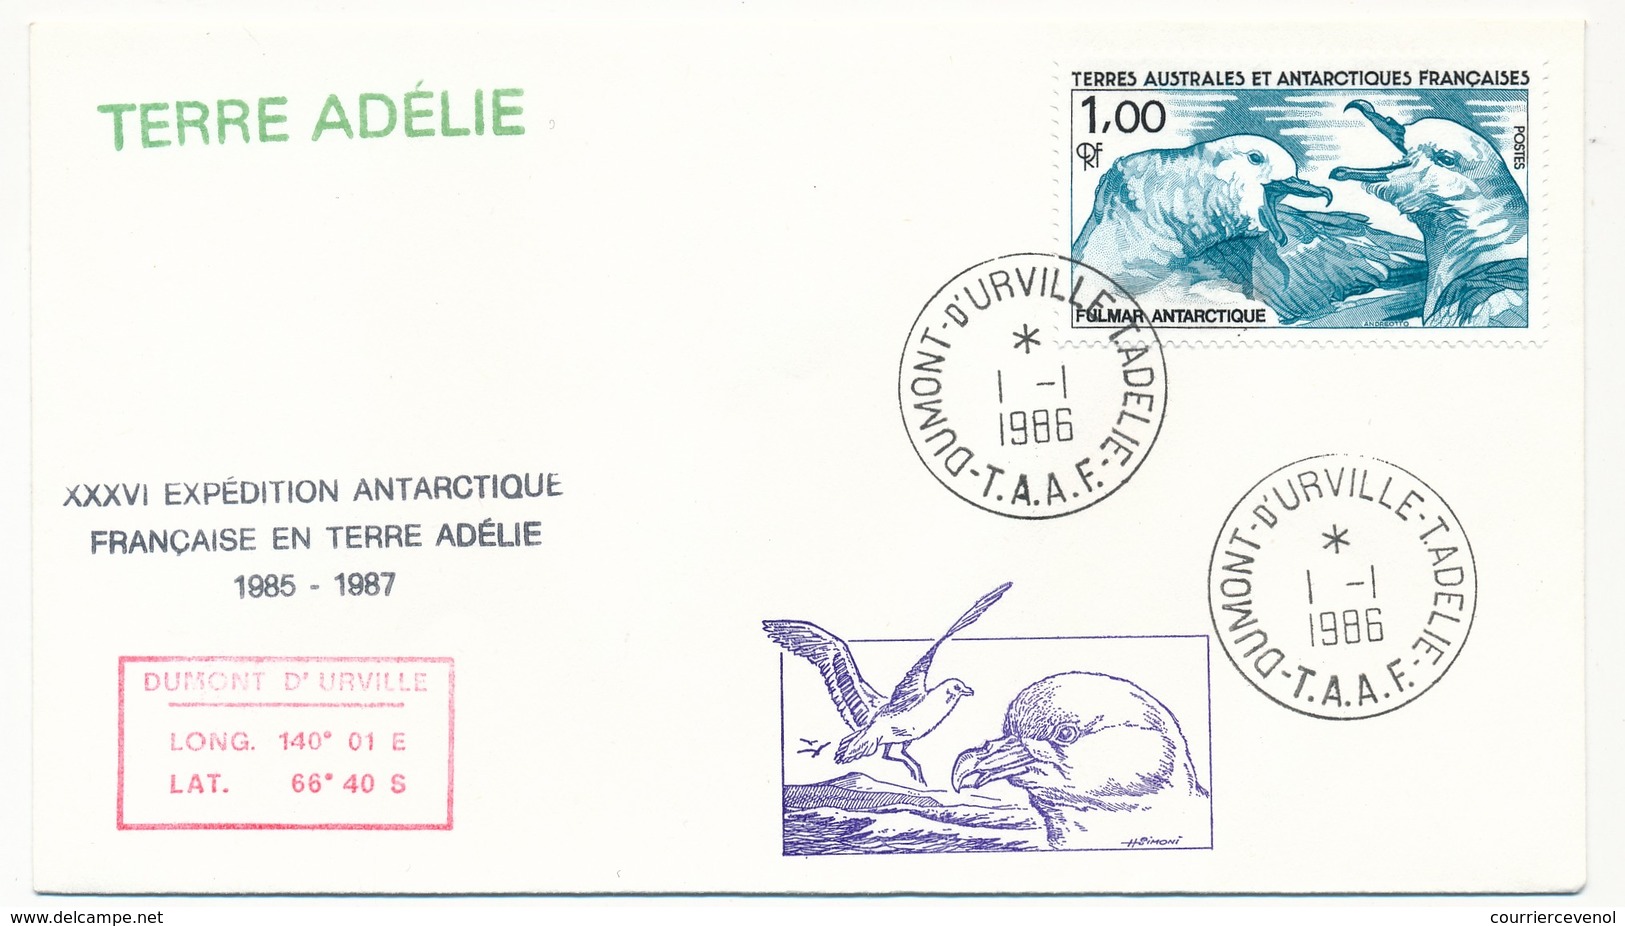 TAAF - Enveloppe - Dumont D'Urville T. Adélie - 1-1-1986 - XXXVI Expédition Antarctique Française... - Briefe U. Dokumente